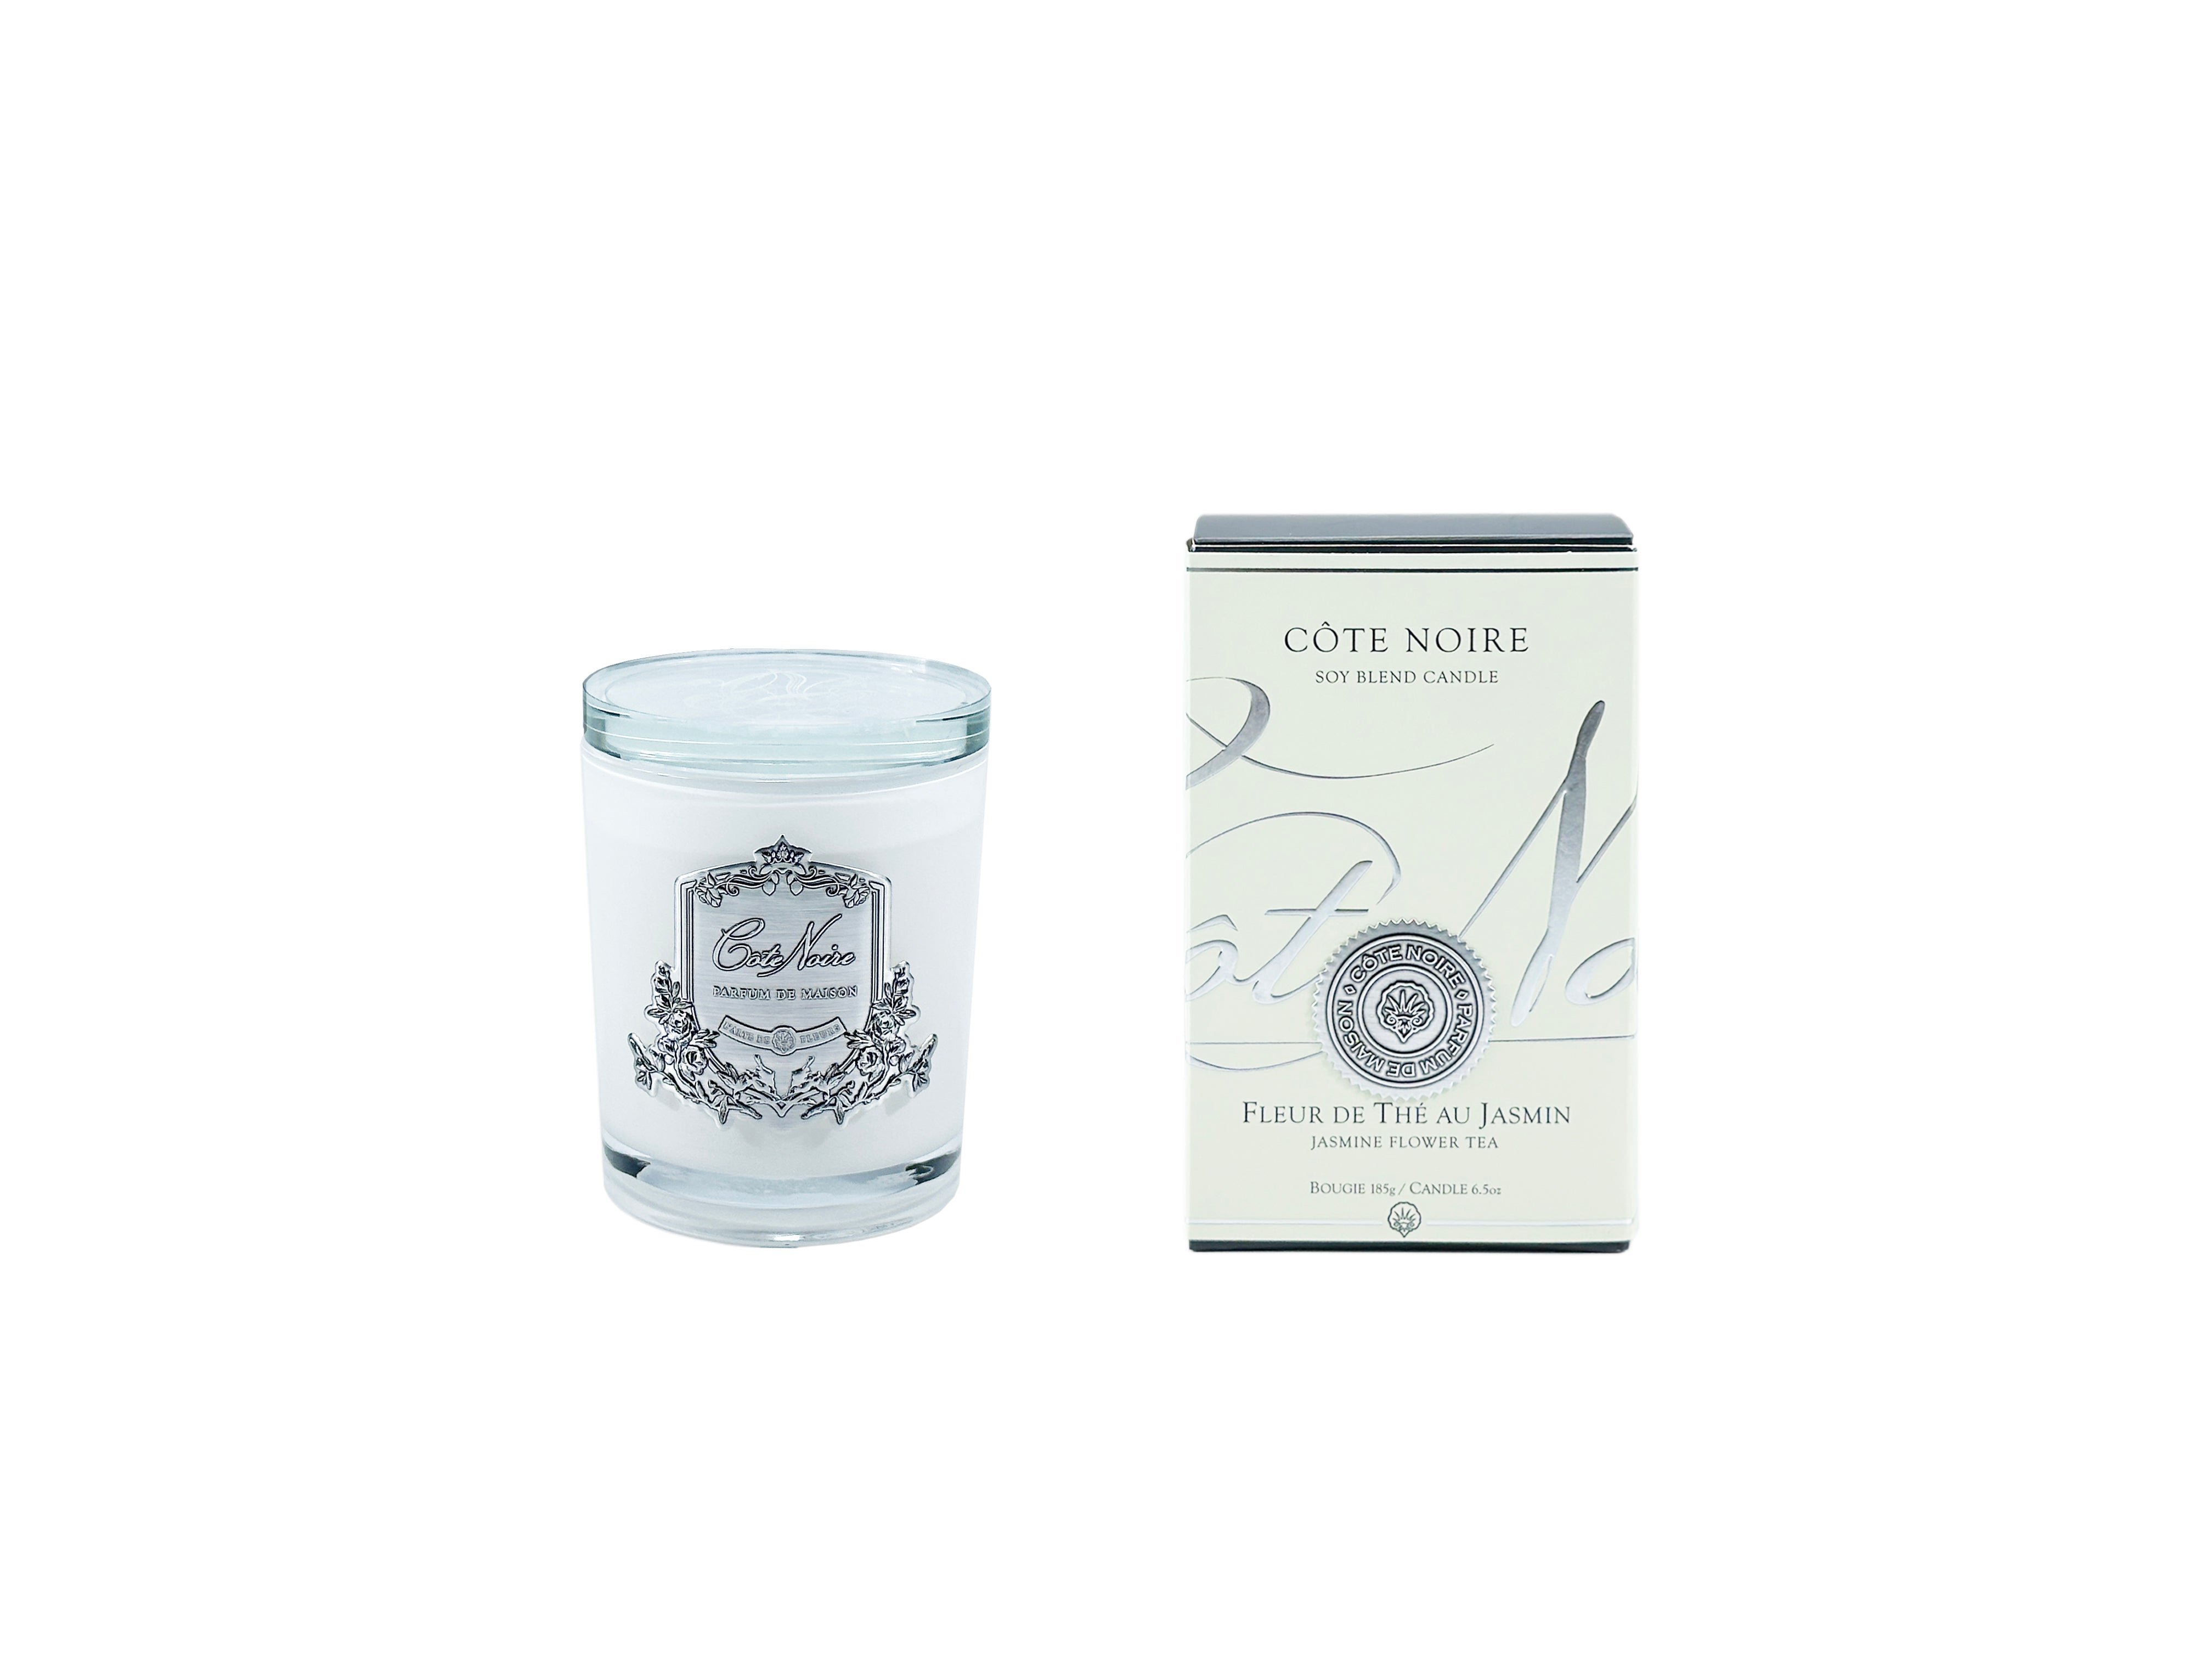 Cote Noire - Jasmine Flower Tea - 185g Silver Candle